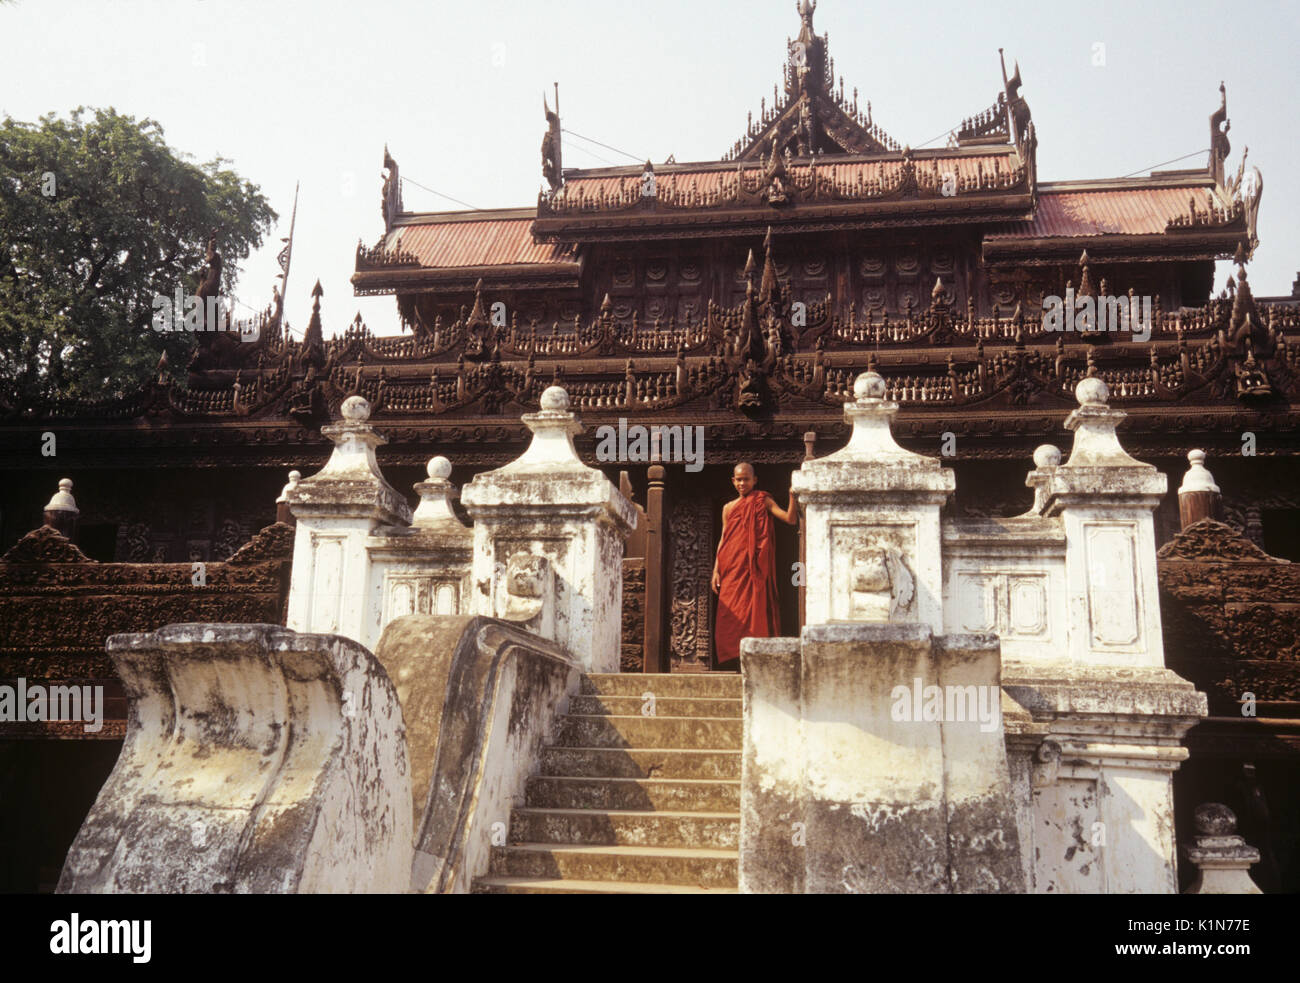 Shwenandaw Kyaung (legno antico monastero buddista), Mandalay Birmania (Myanmar) Foto Stock